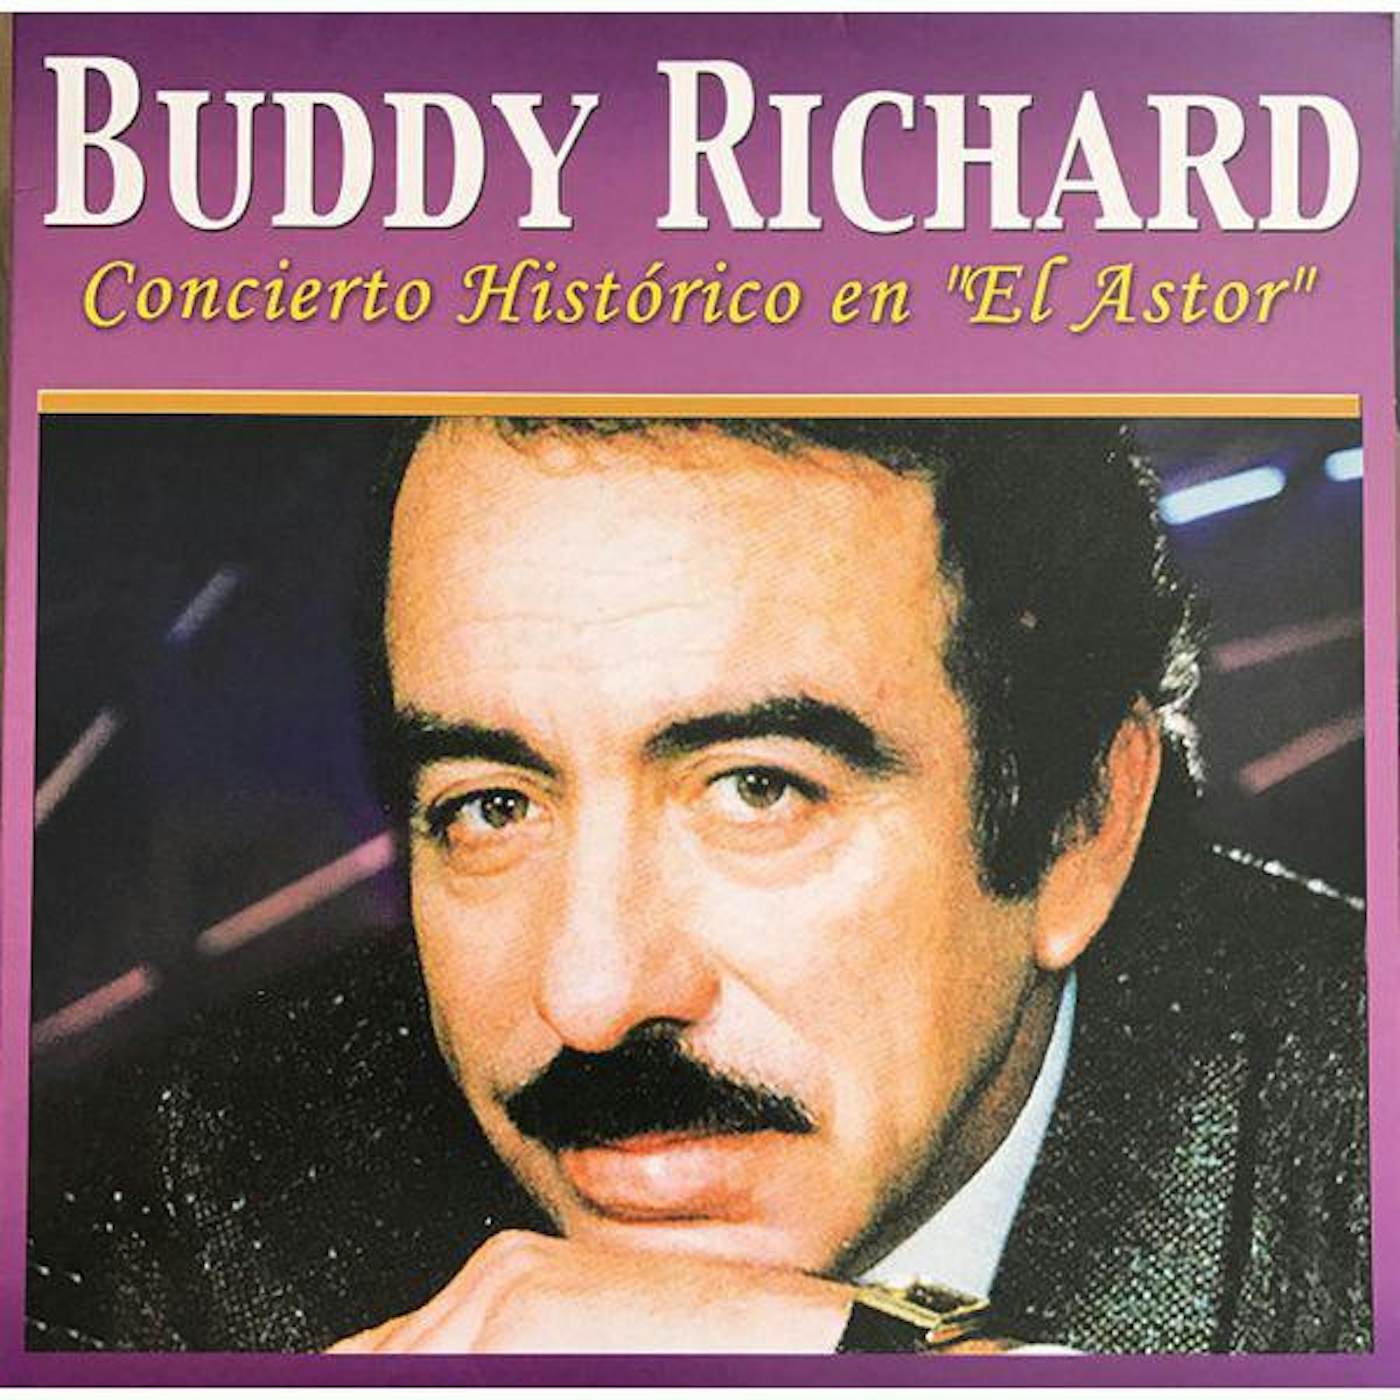 Buddy Rich CONCIERTO HISTORICO Vinyl Record